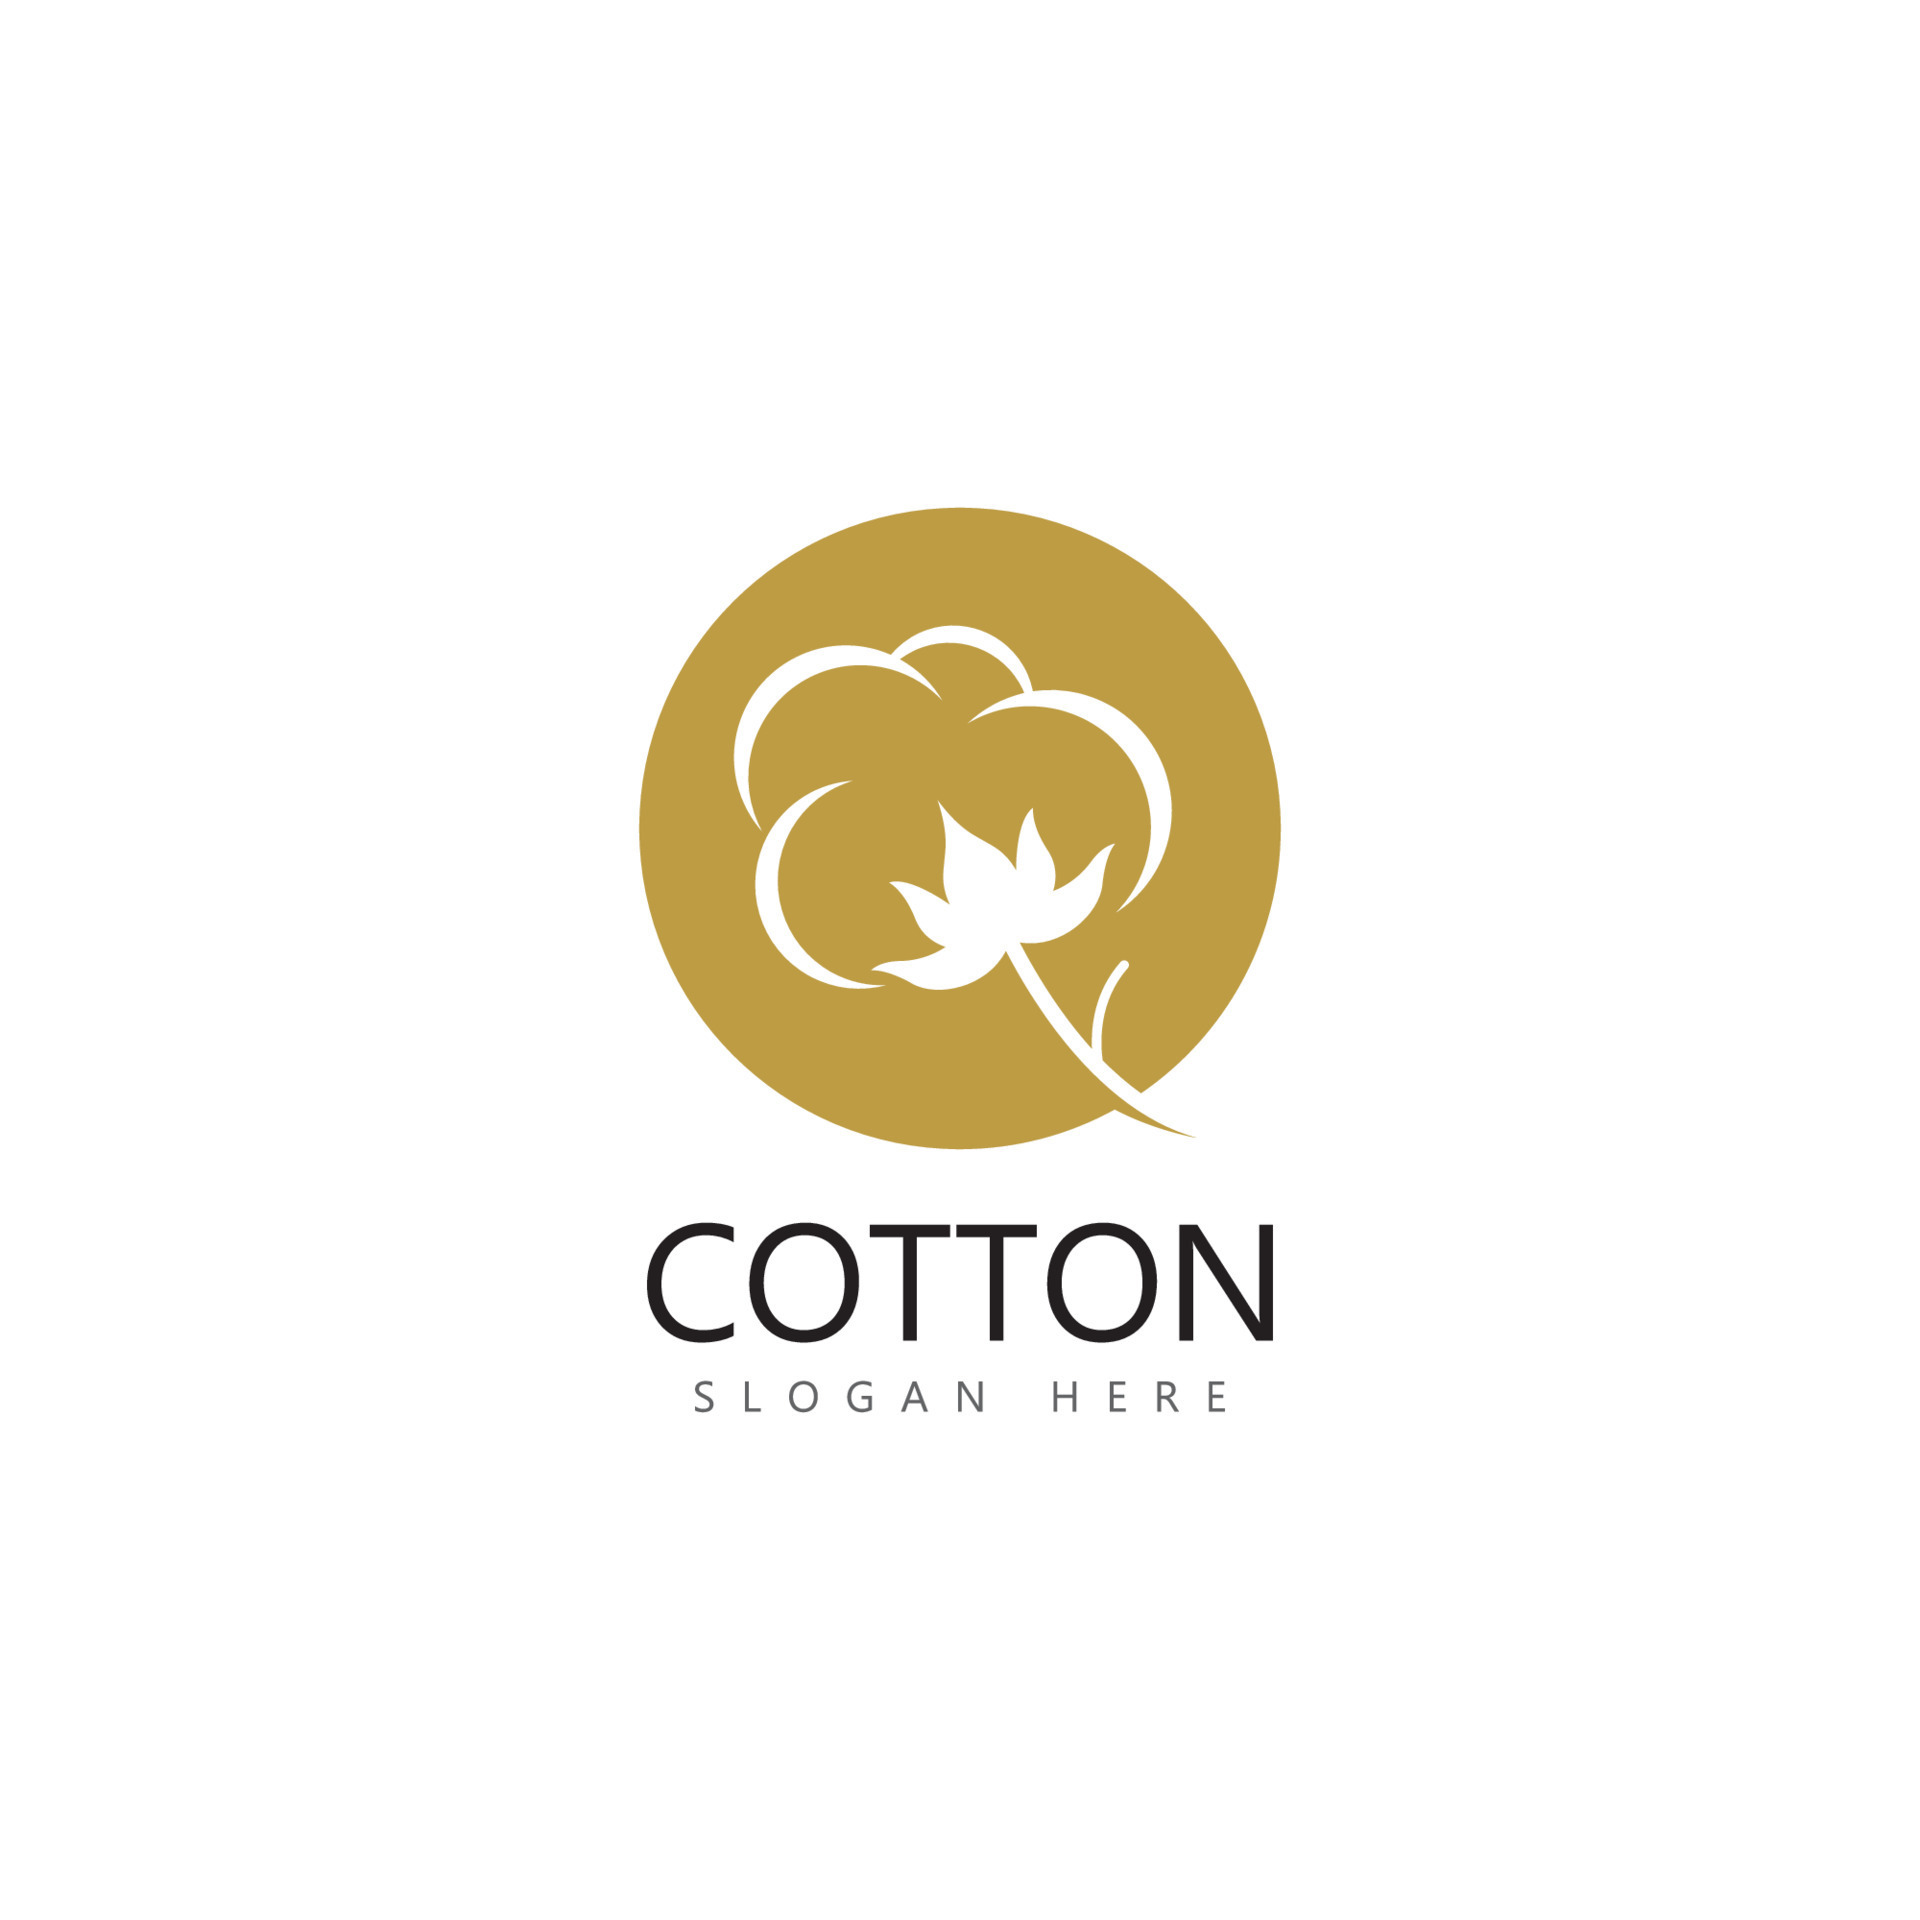 cotton flower vector icon logo design 14027473 Vector Art at Vecteezy